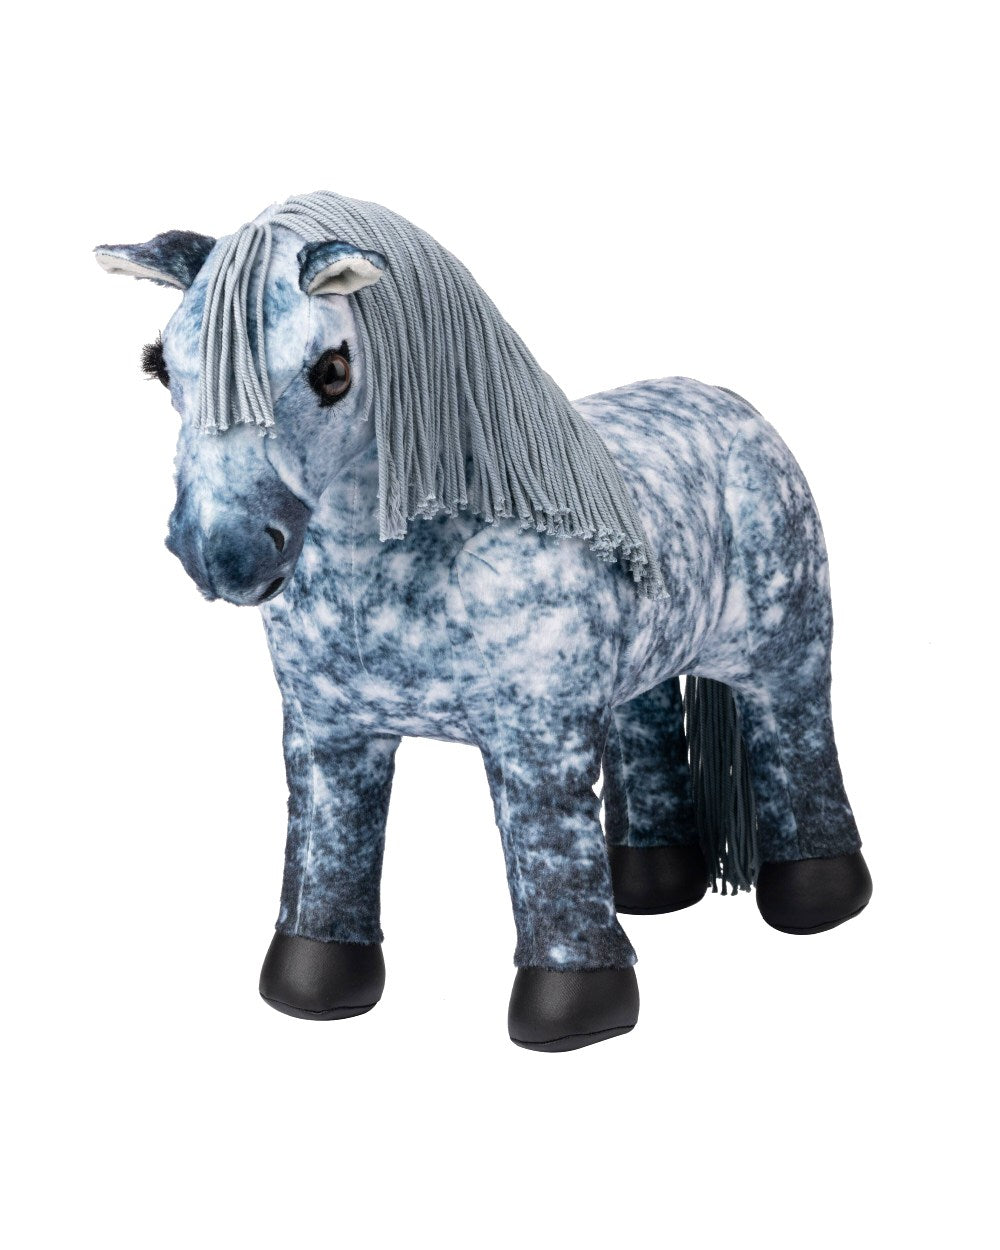 LeMieux Toy Pony Sam on white background 